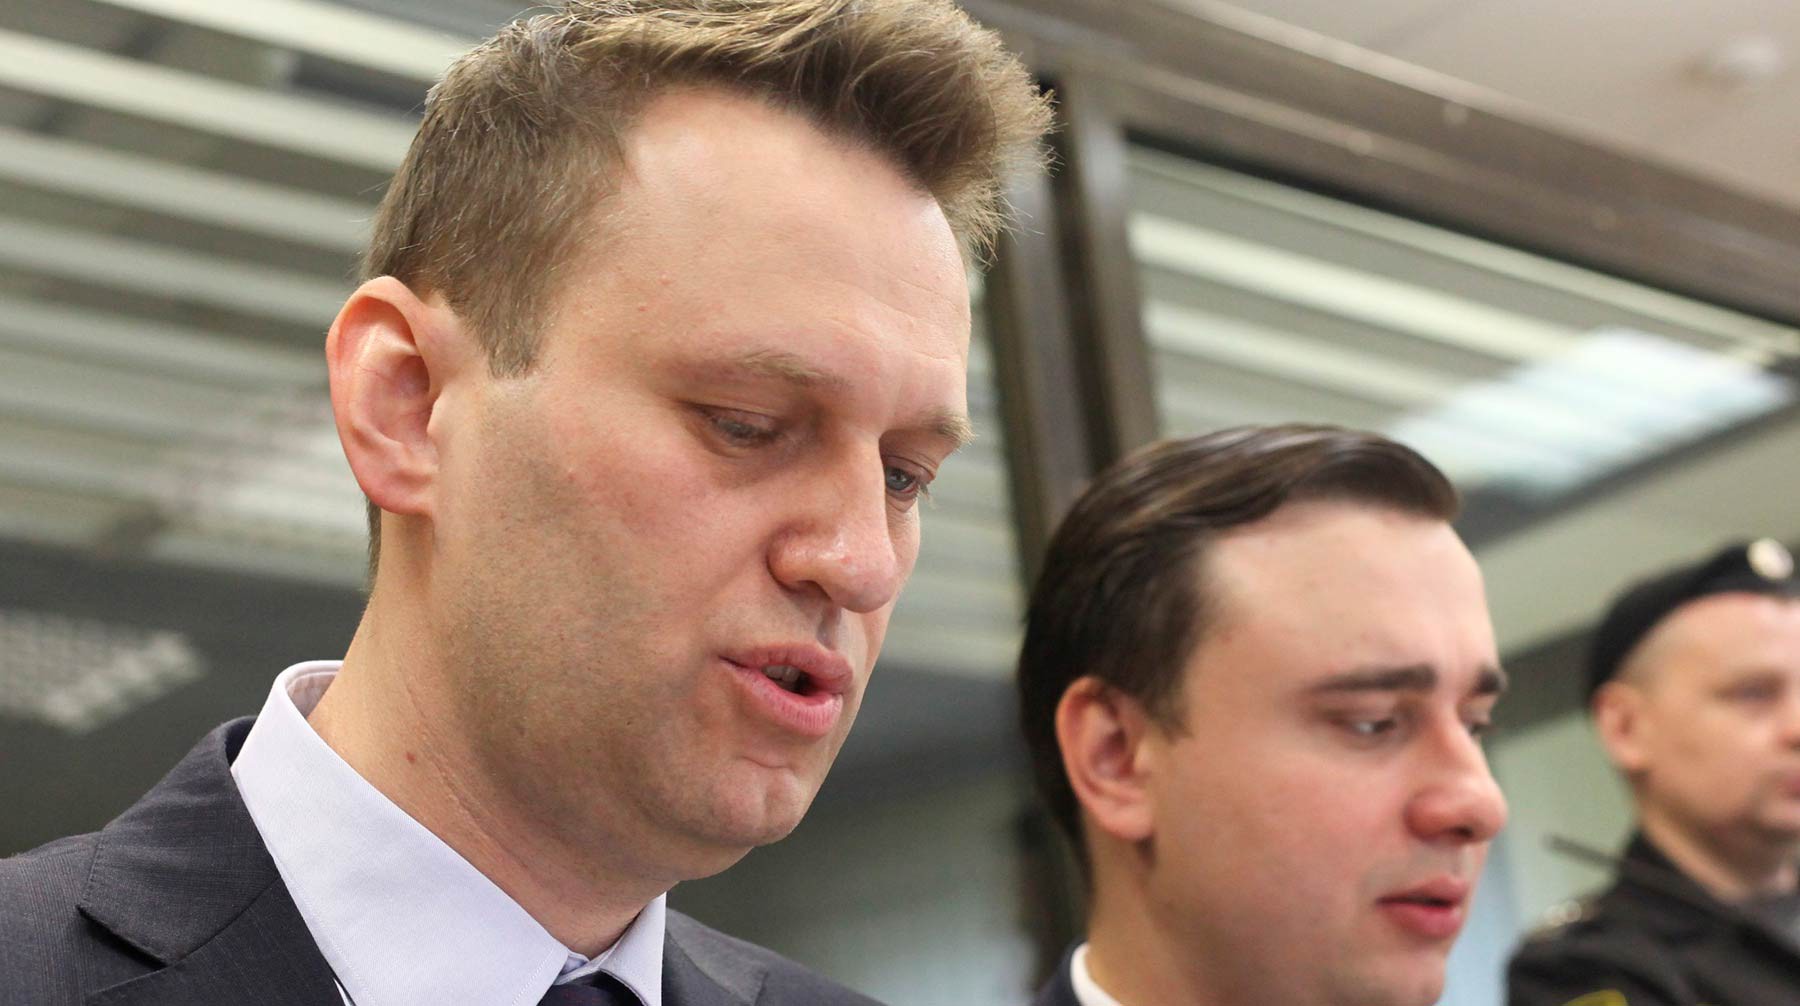 Dailystorm - Пригожин пообещал перевести Навальному миллион рублей в качестве пожертвования